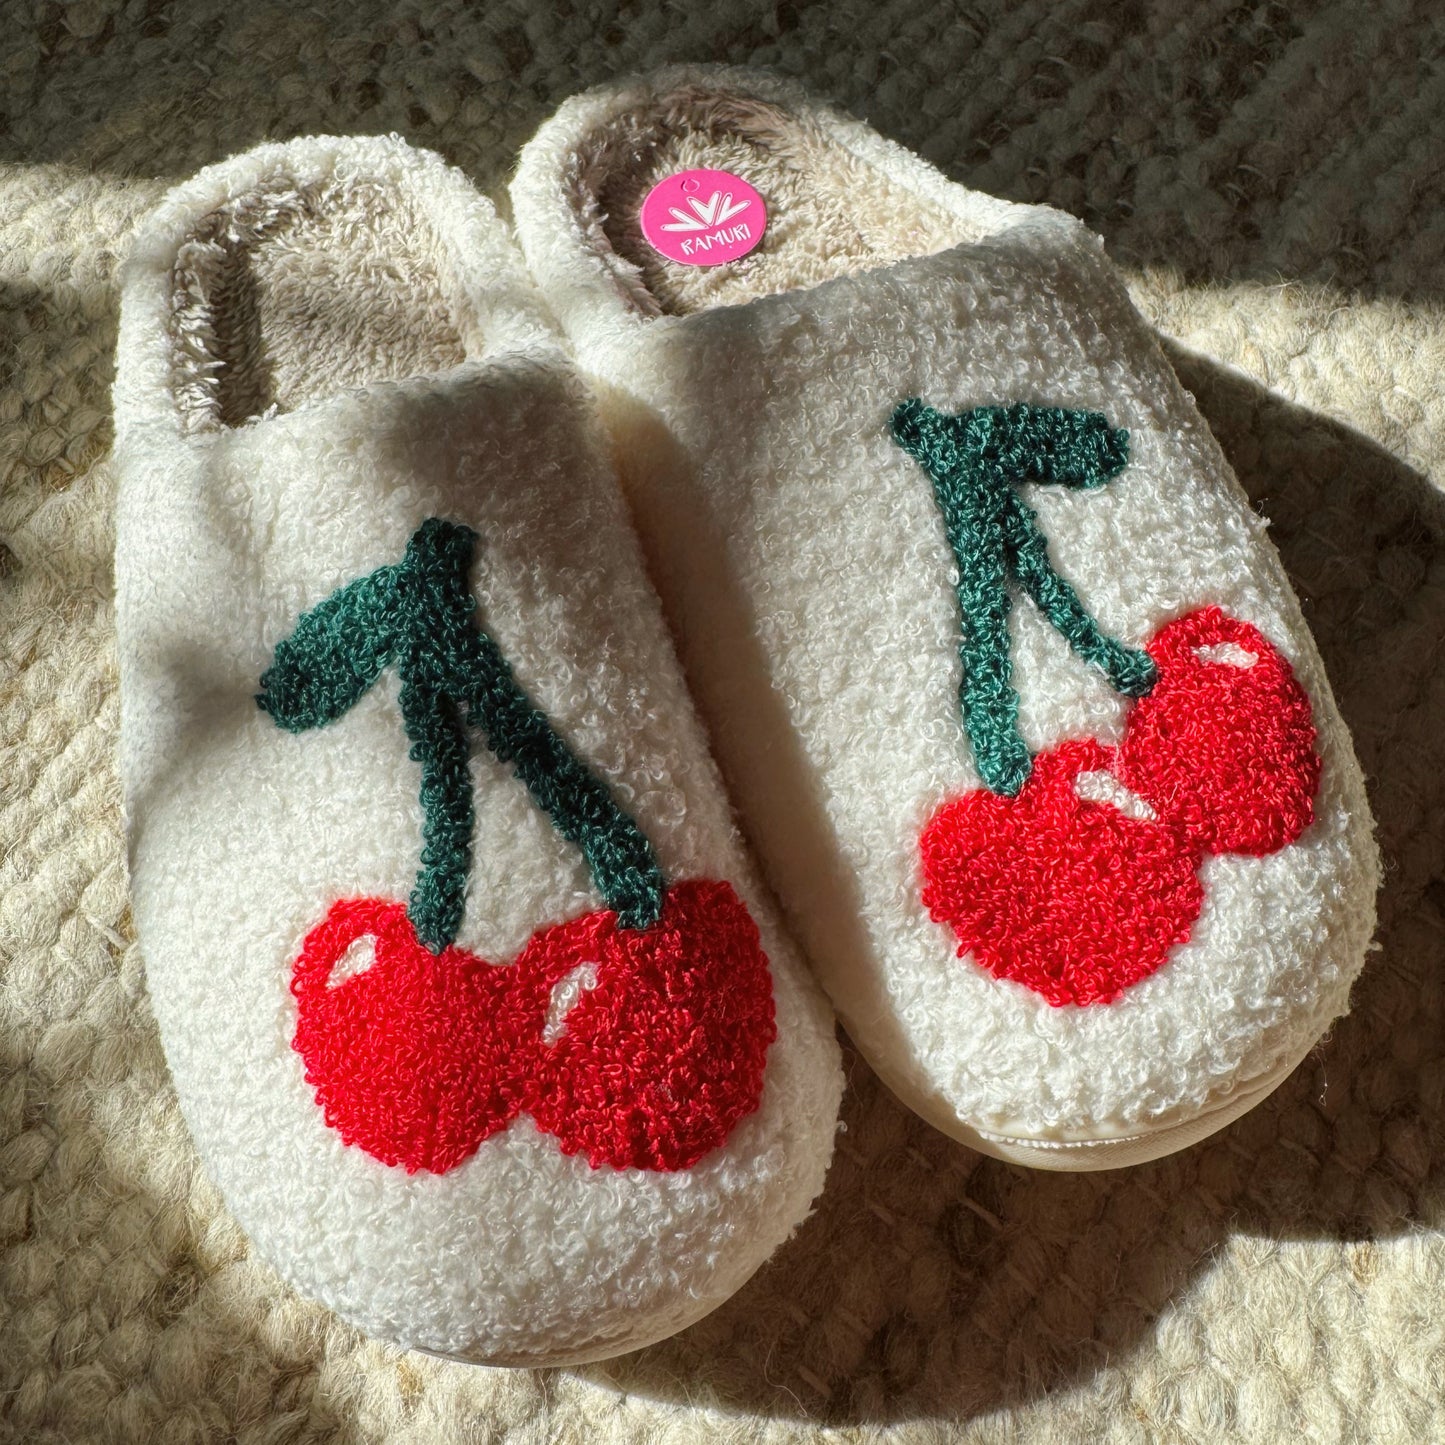 Cherry Slippers